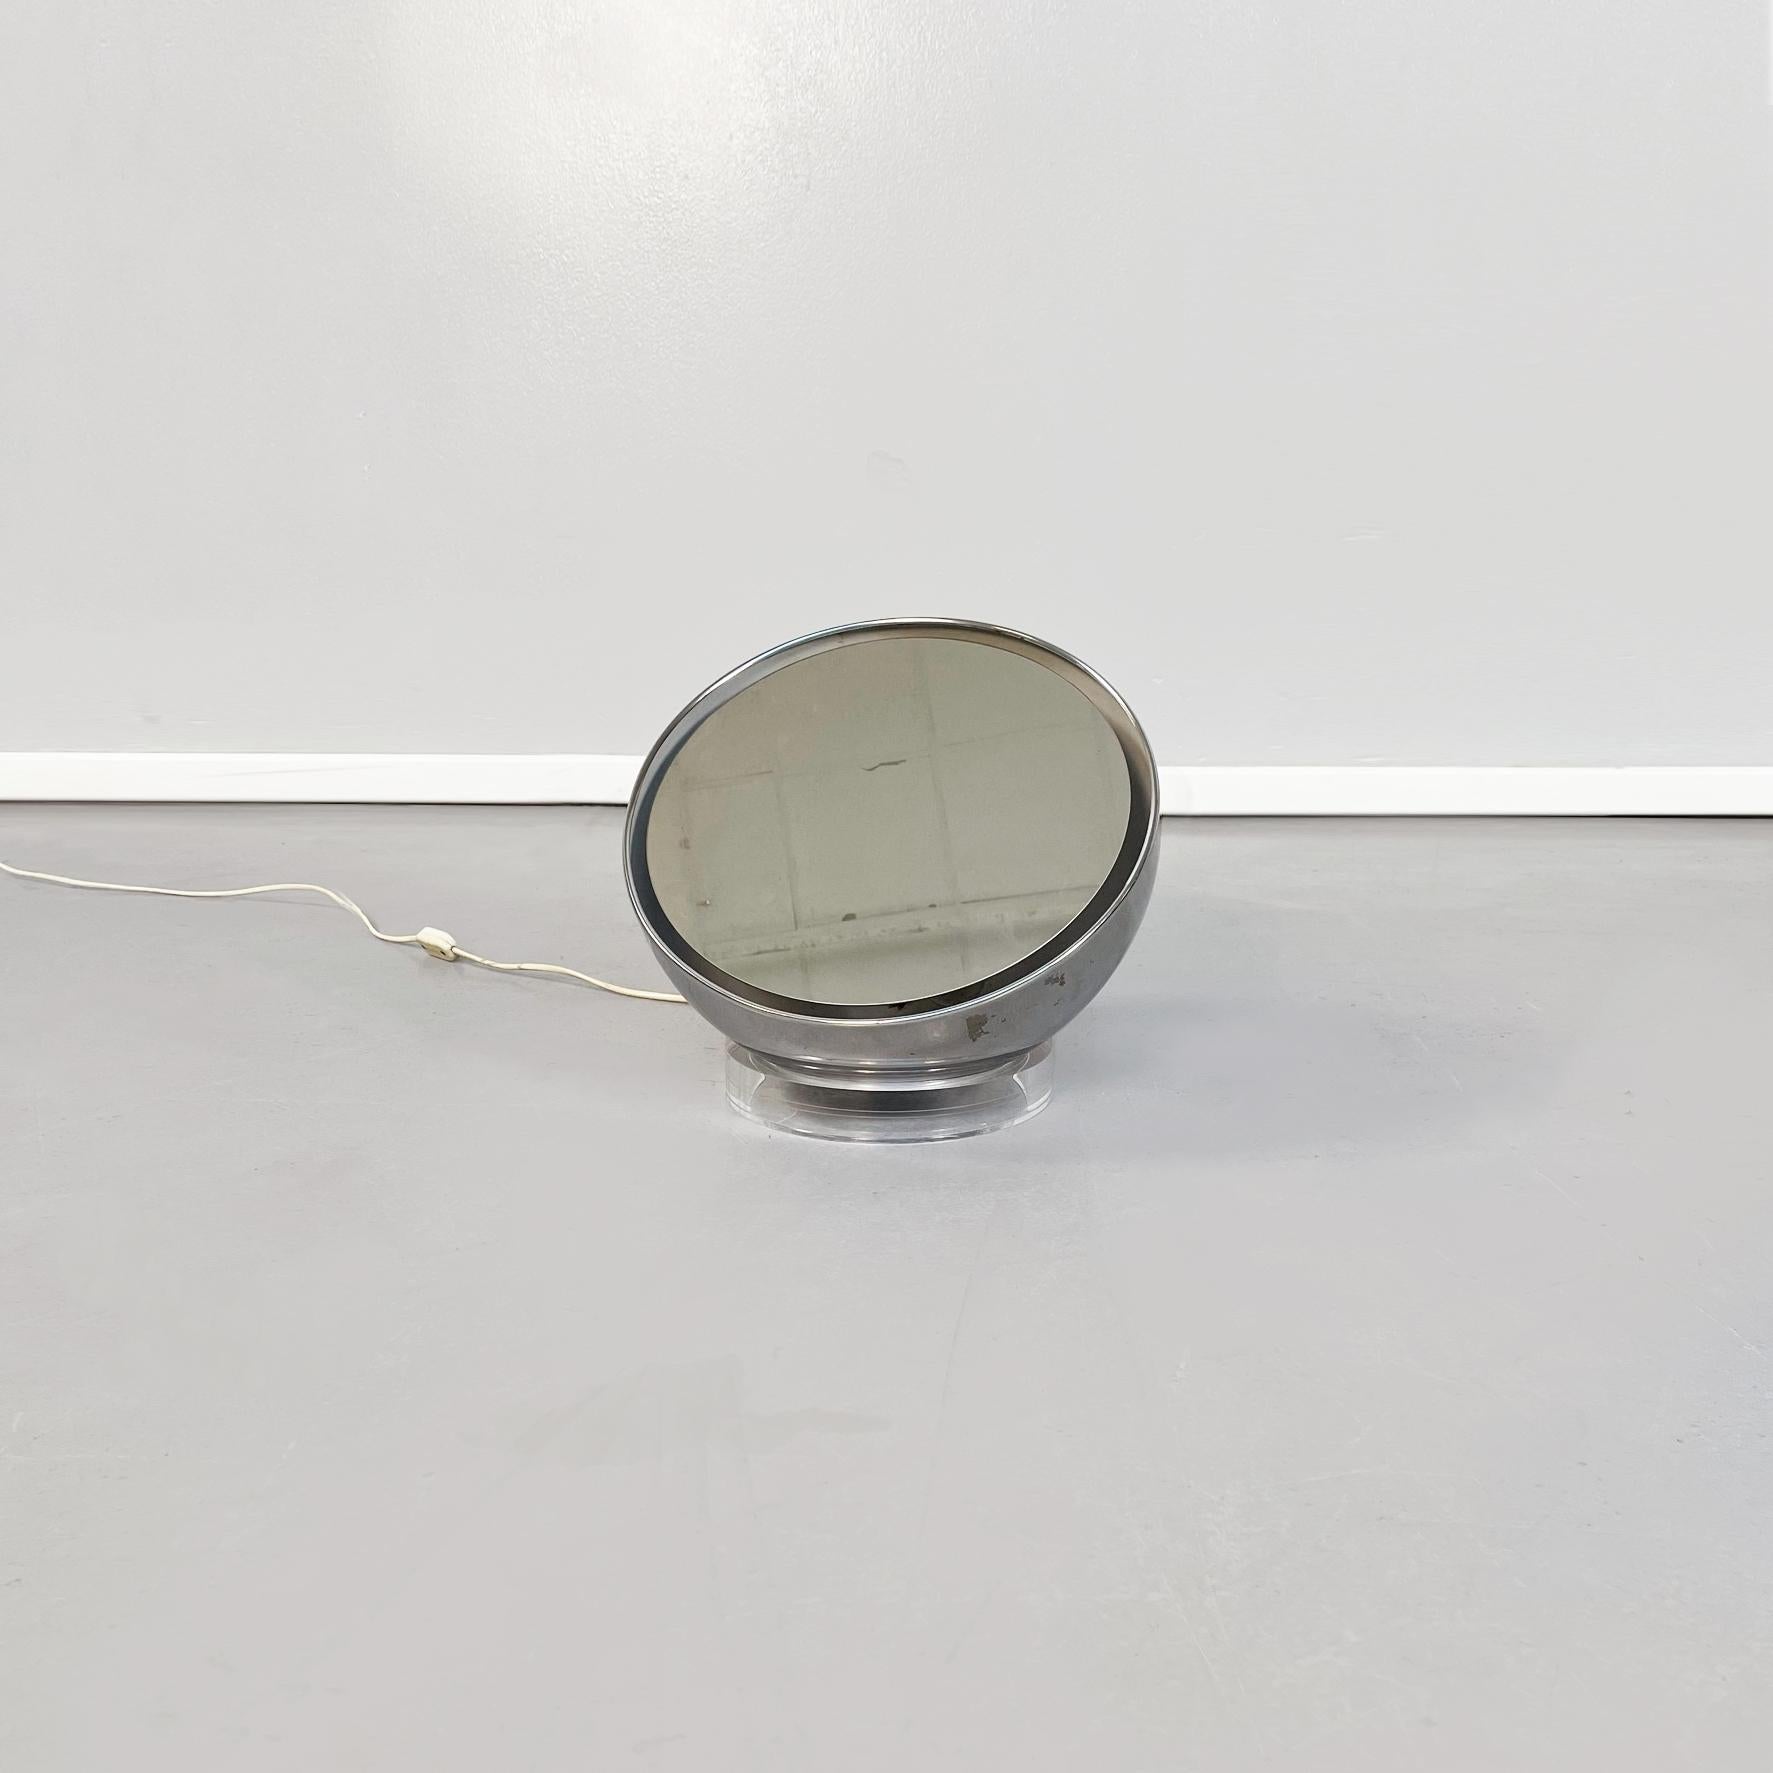 Italienische halbkugelförmige Tischlampe-Spiegel aus Stahl und Kunststoff, Mitte des Jahrhunderts, 1970er Jahre
Halbkugelförmiger Tischlampen-Spiegel aus Stahl mit rundem Kunststoffsockel. Der Spiegel ist in der Mitte der Halbkugel aufgehängt und